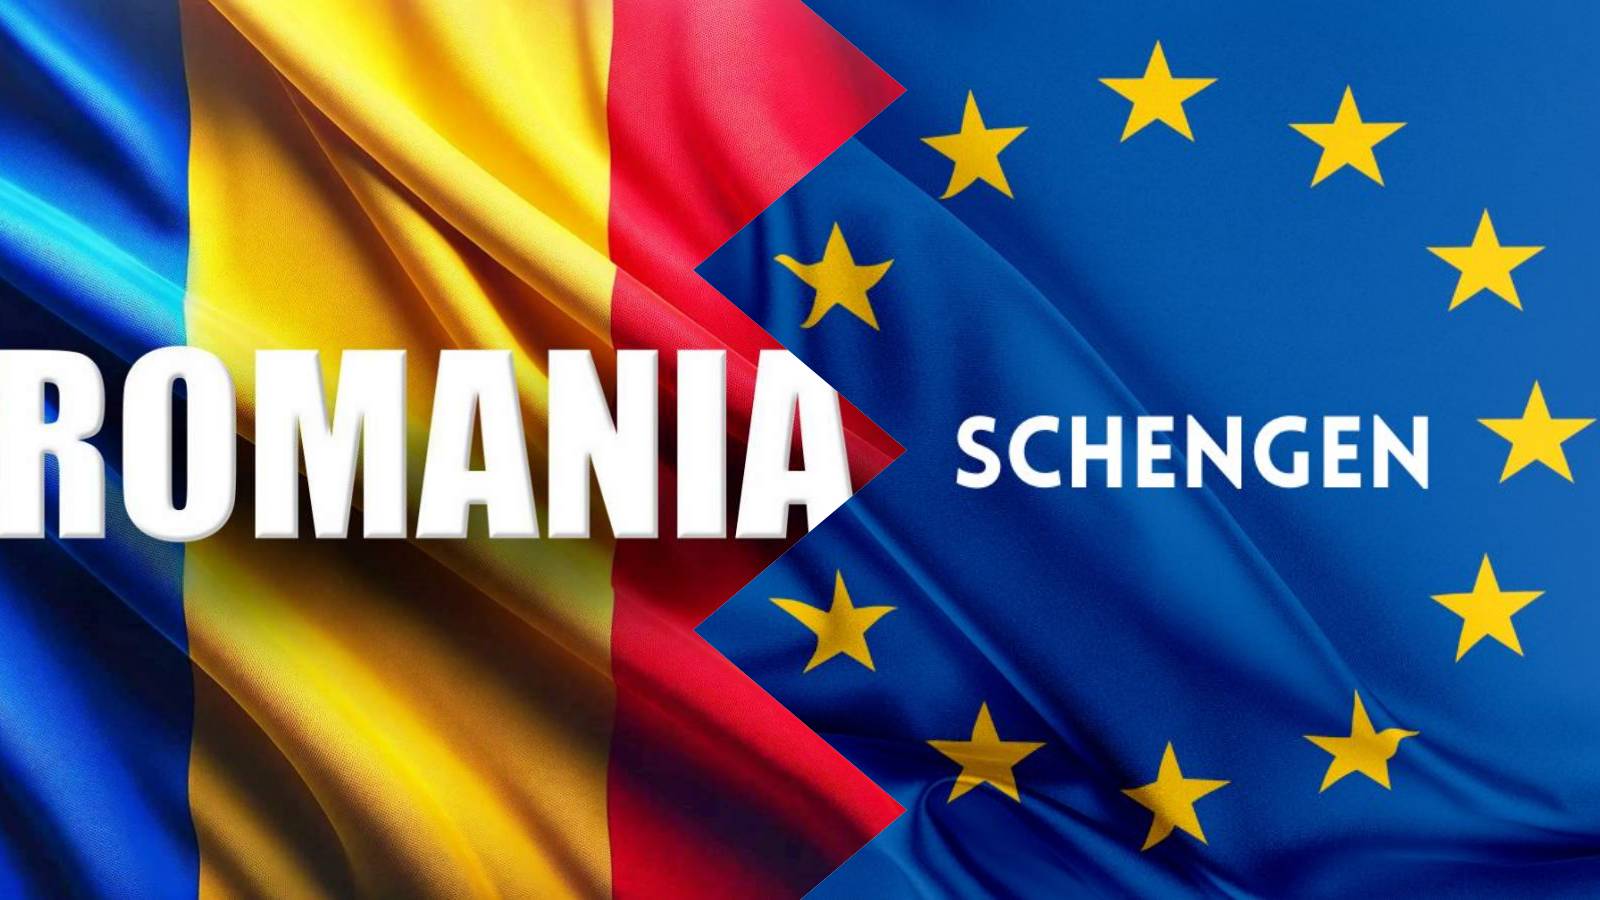 Annonces officielles Schengen LAST MINUTE MAI Adhésion partielle de la Roumanie